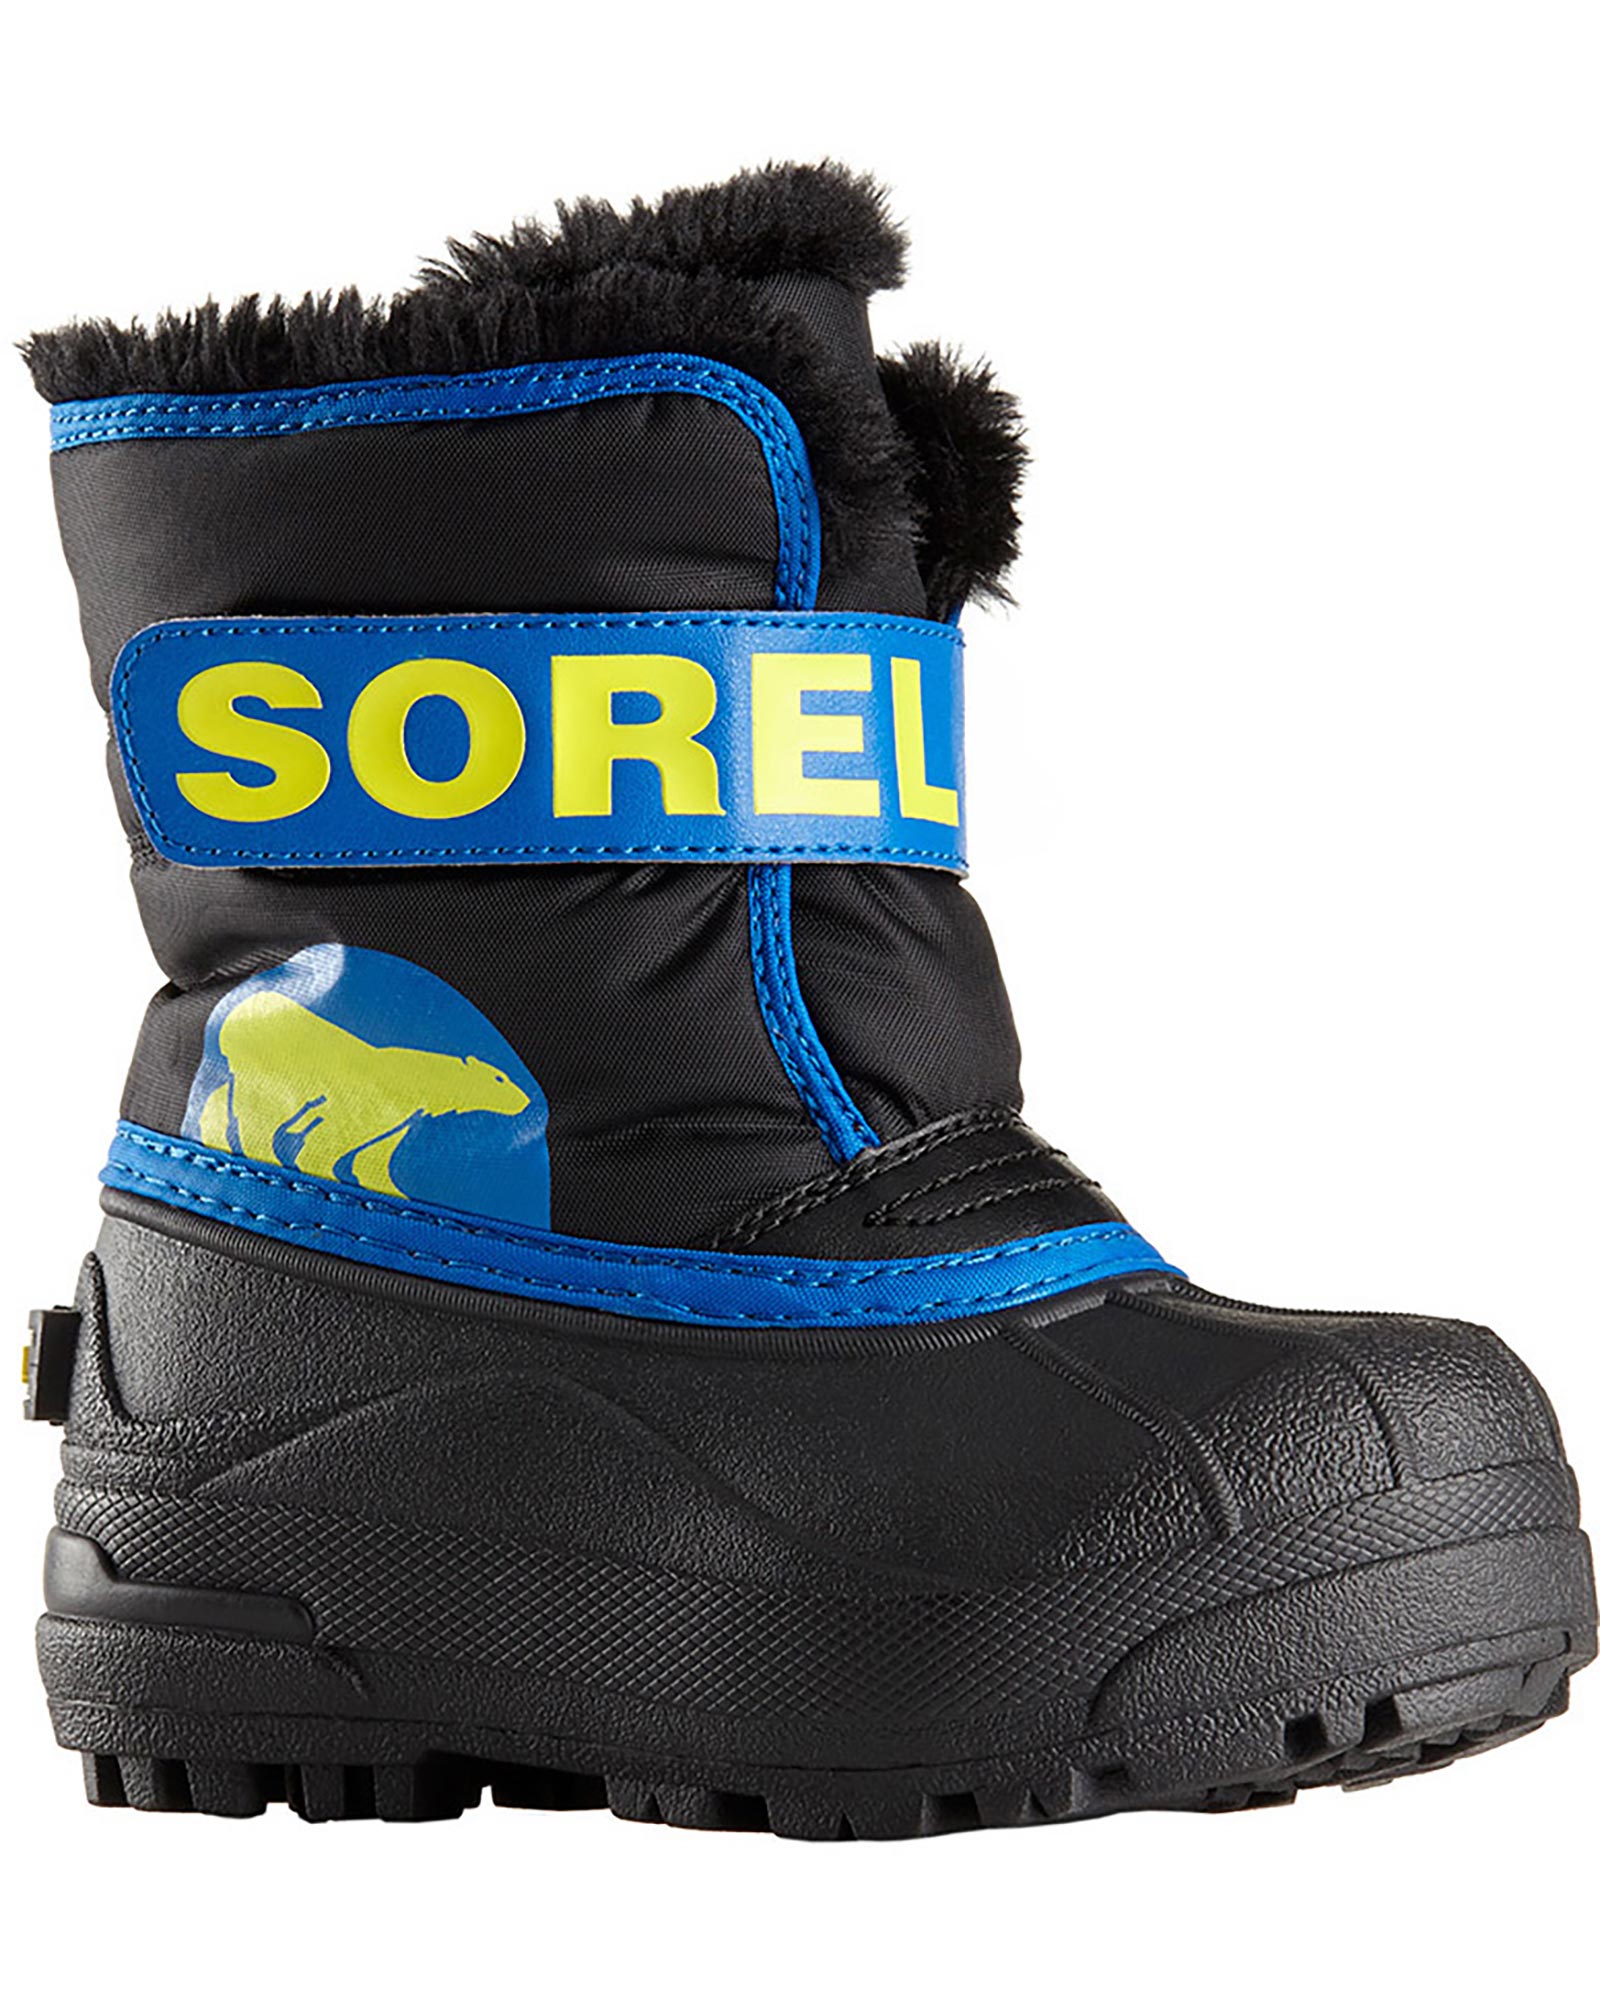 Sorel Snow Commander Toddler Snow Boots - Black/Super Blue UK 11 INF